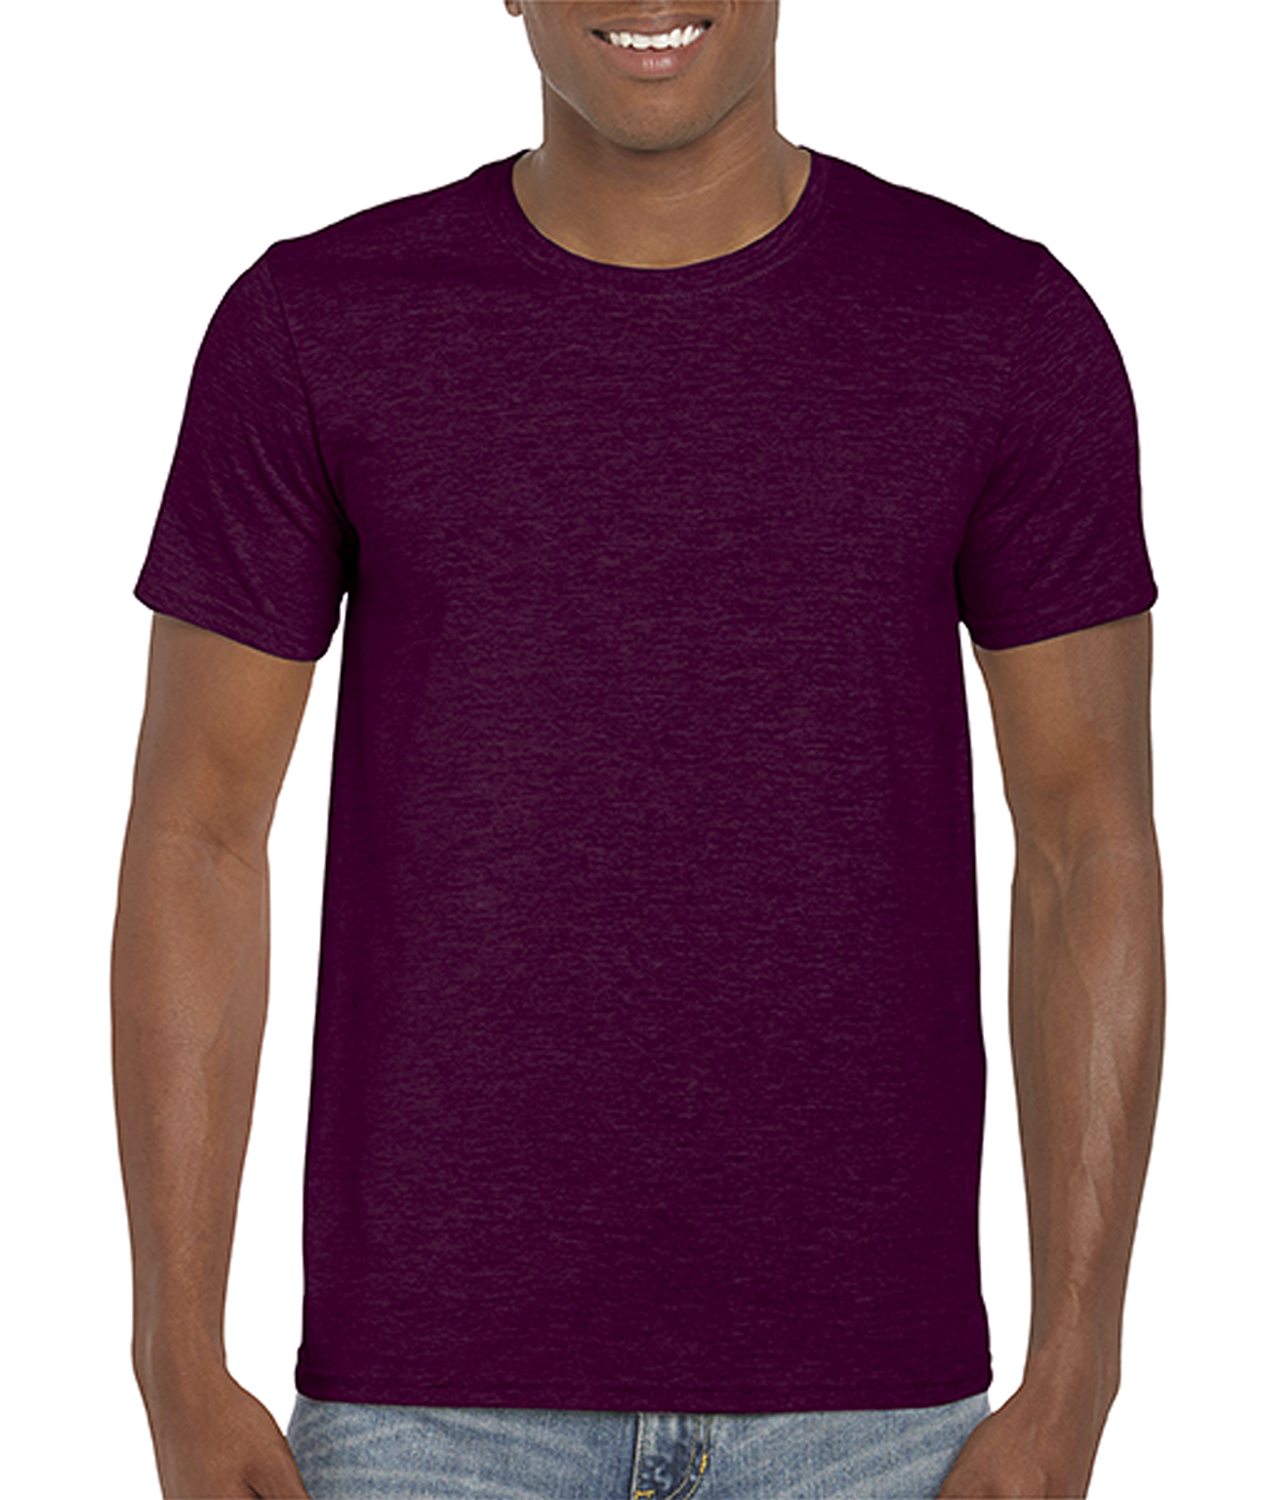 Pánské tričko Gildan Softstyle - Hnědočervená L